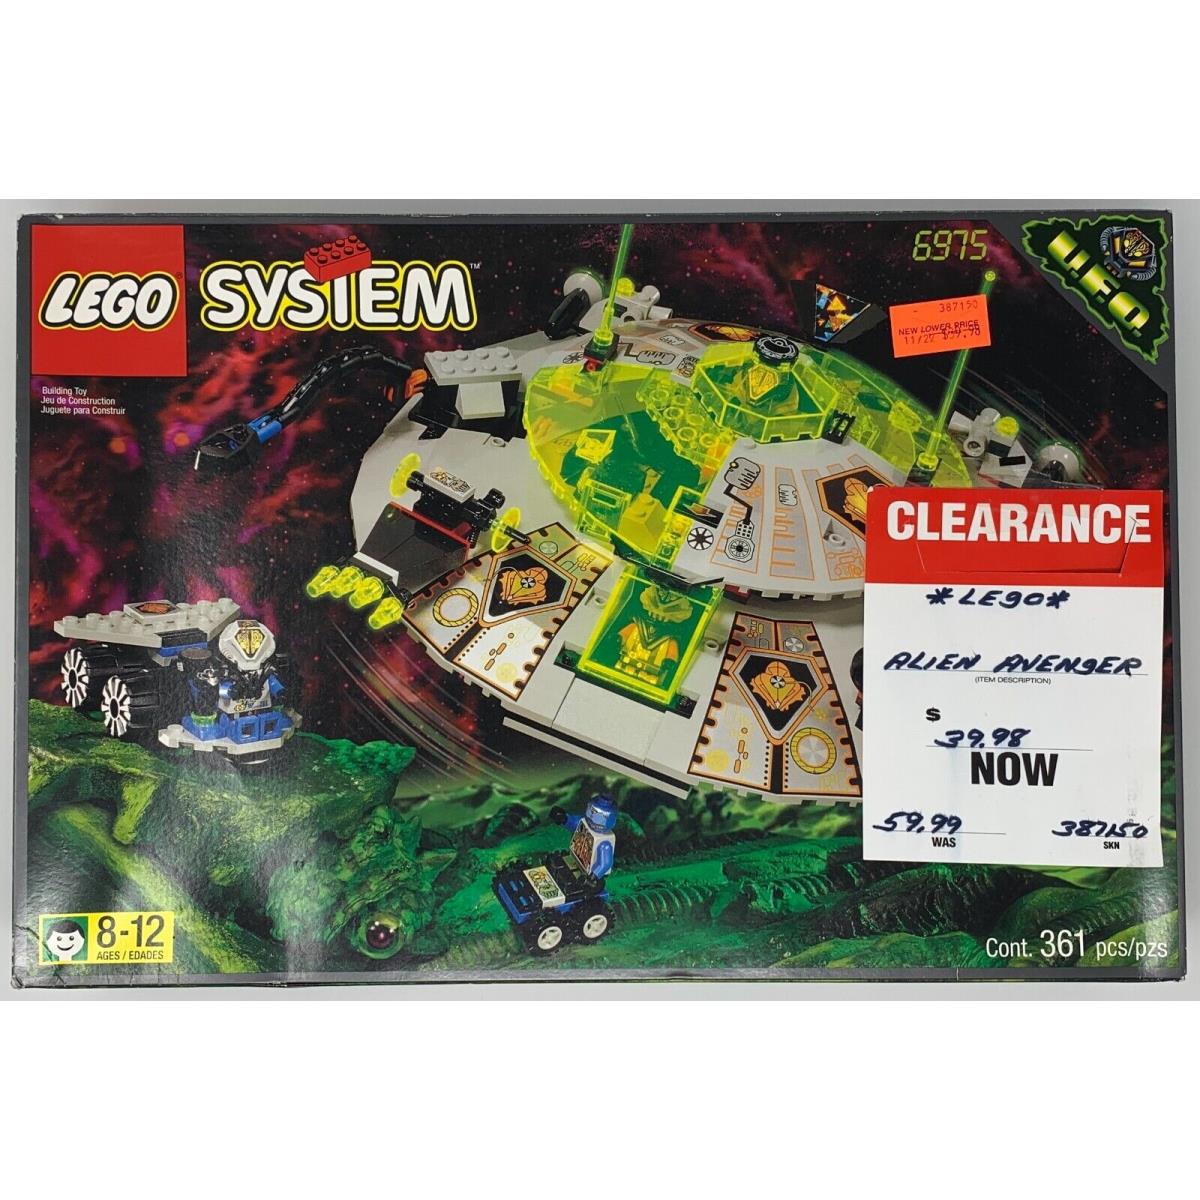 Lego 6975 Alien Avenger 1997